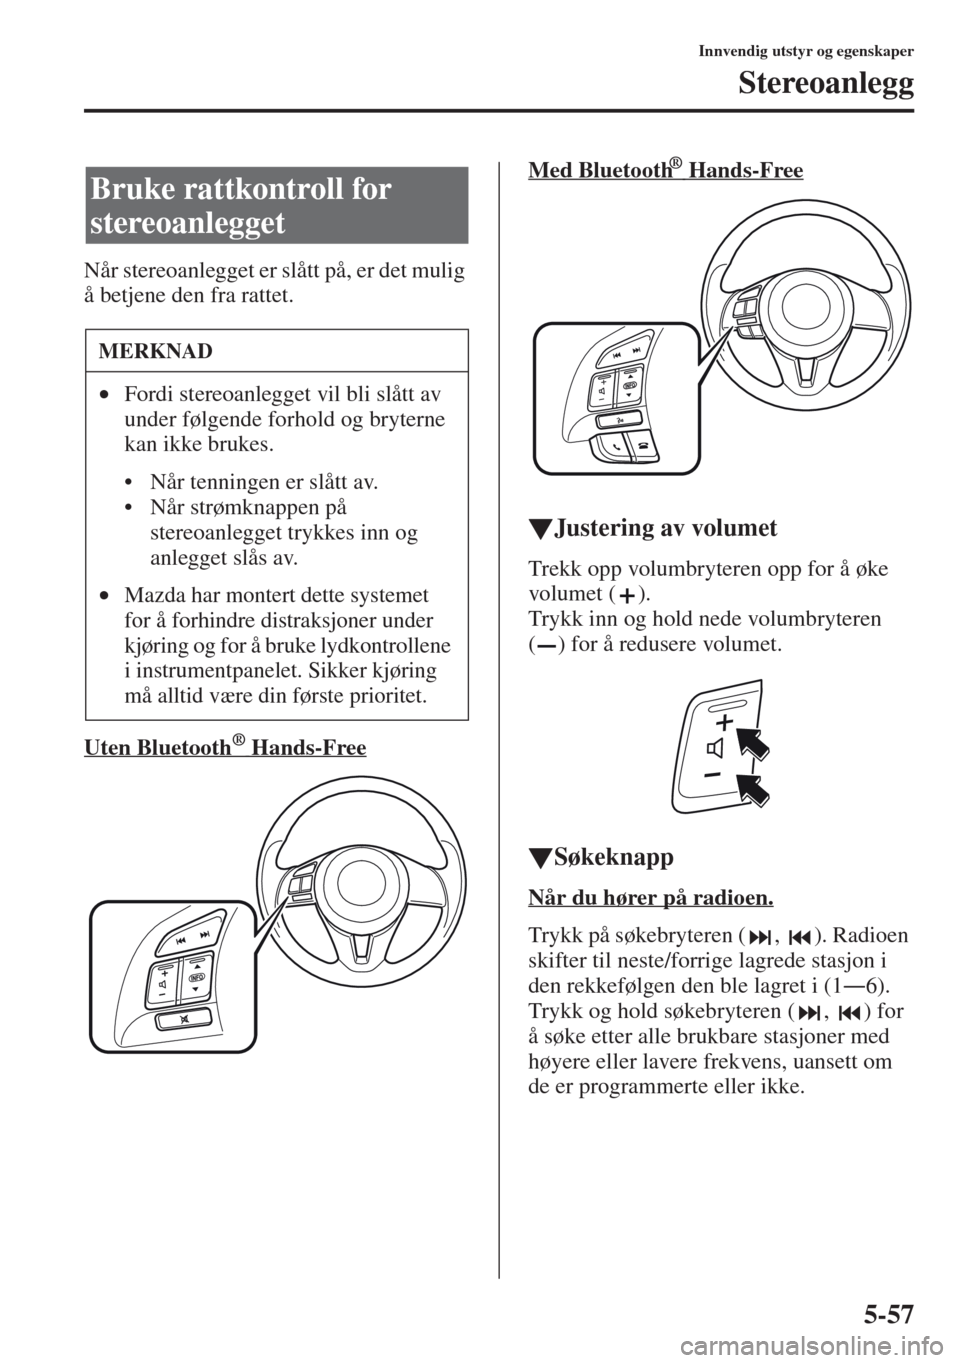 MAZDA MODEL CX-5 2013  Brukerhåndbok (in Norwegian) 5-57
Innvendig utstyr og egenskaper
Stereoanlegg
Når stereoanlegget er slått på, er det mulig 
å betjene den fra rattet.
Uten Bluetooth   
 ® Hands-Free
Med Bluetooth     ® Hands-Free
tJustering